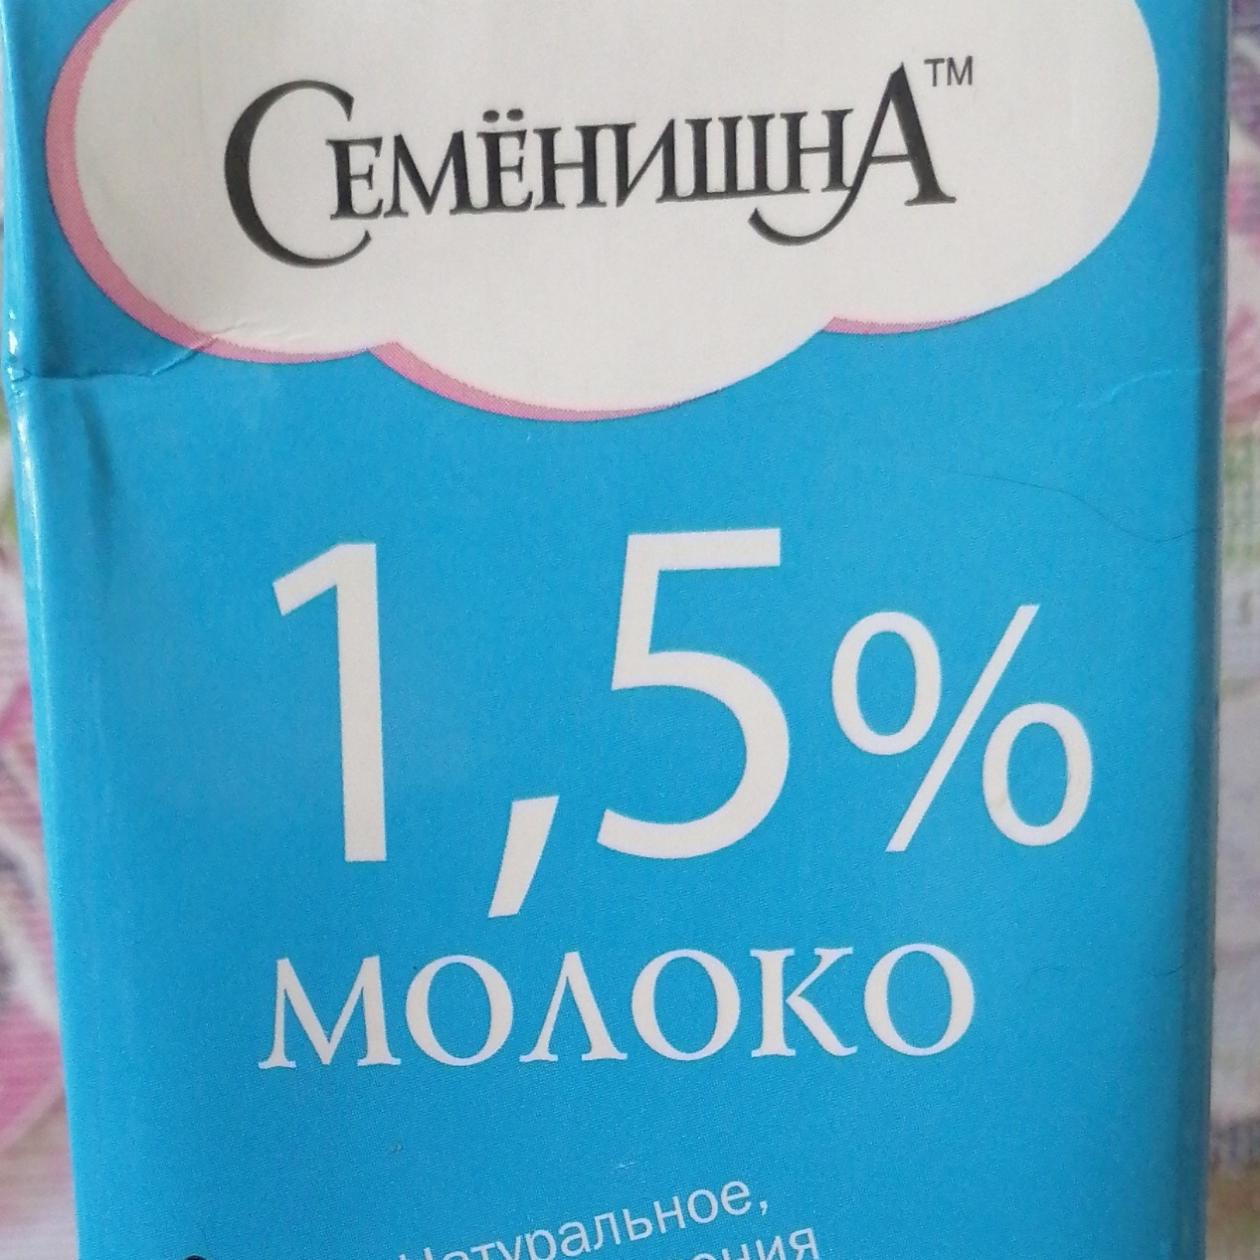 Фото - Молоко 1.5% Семенишна